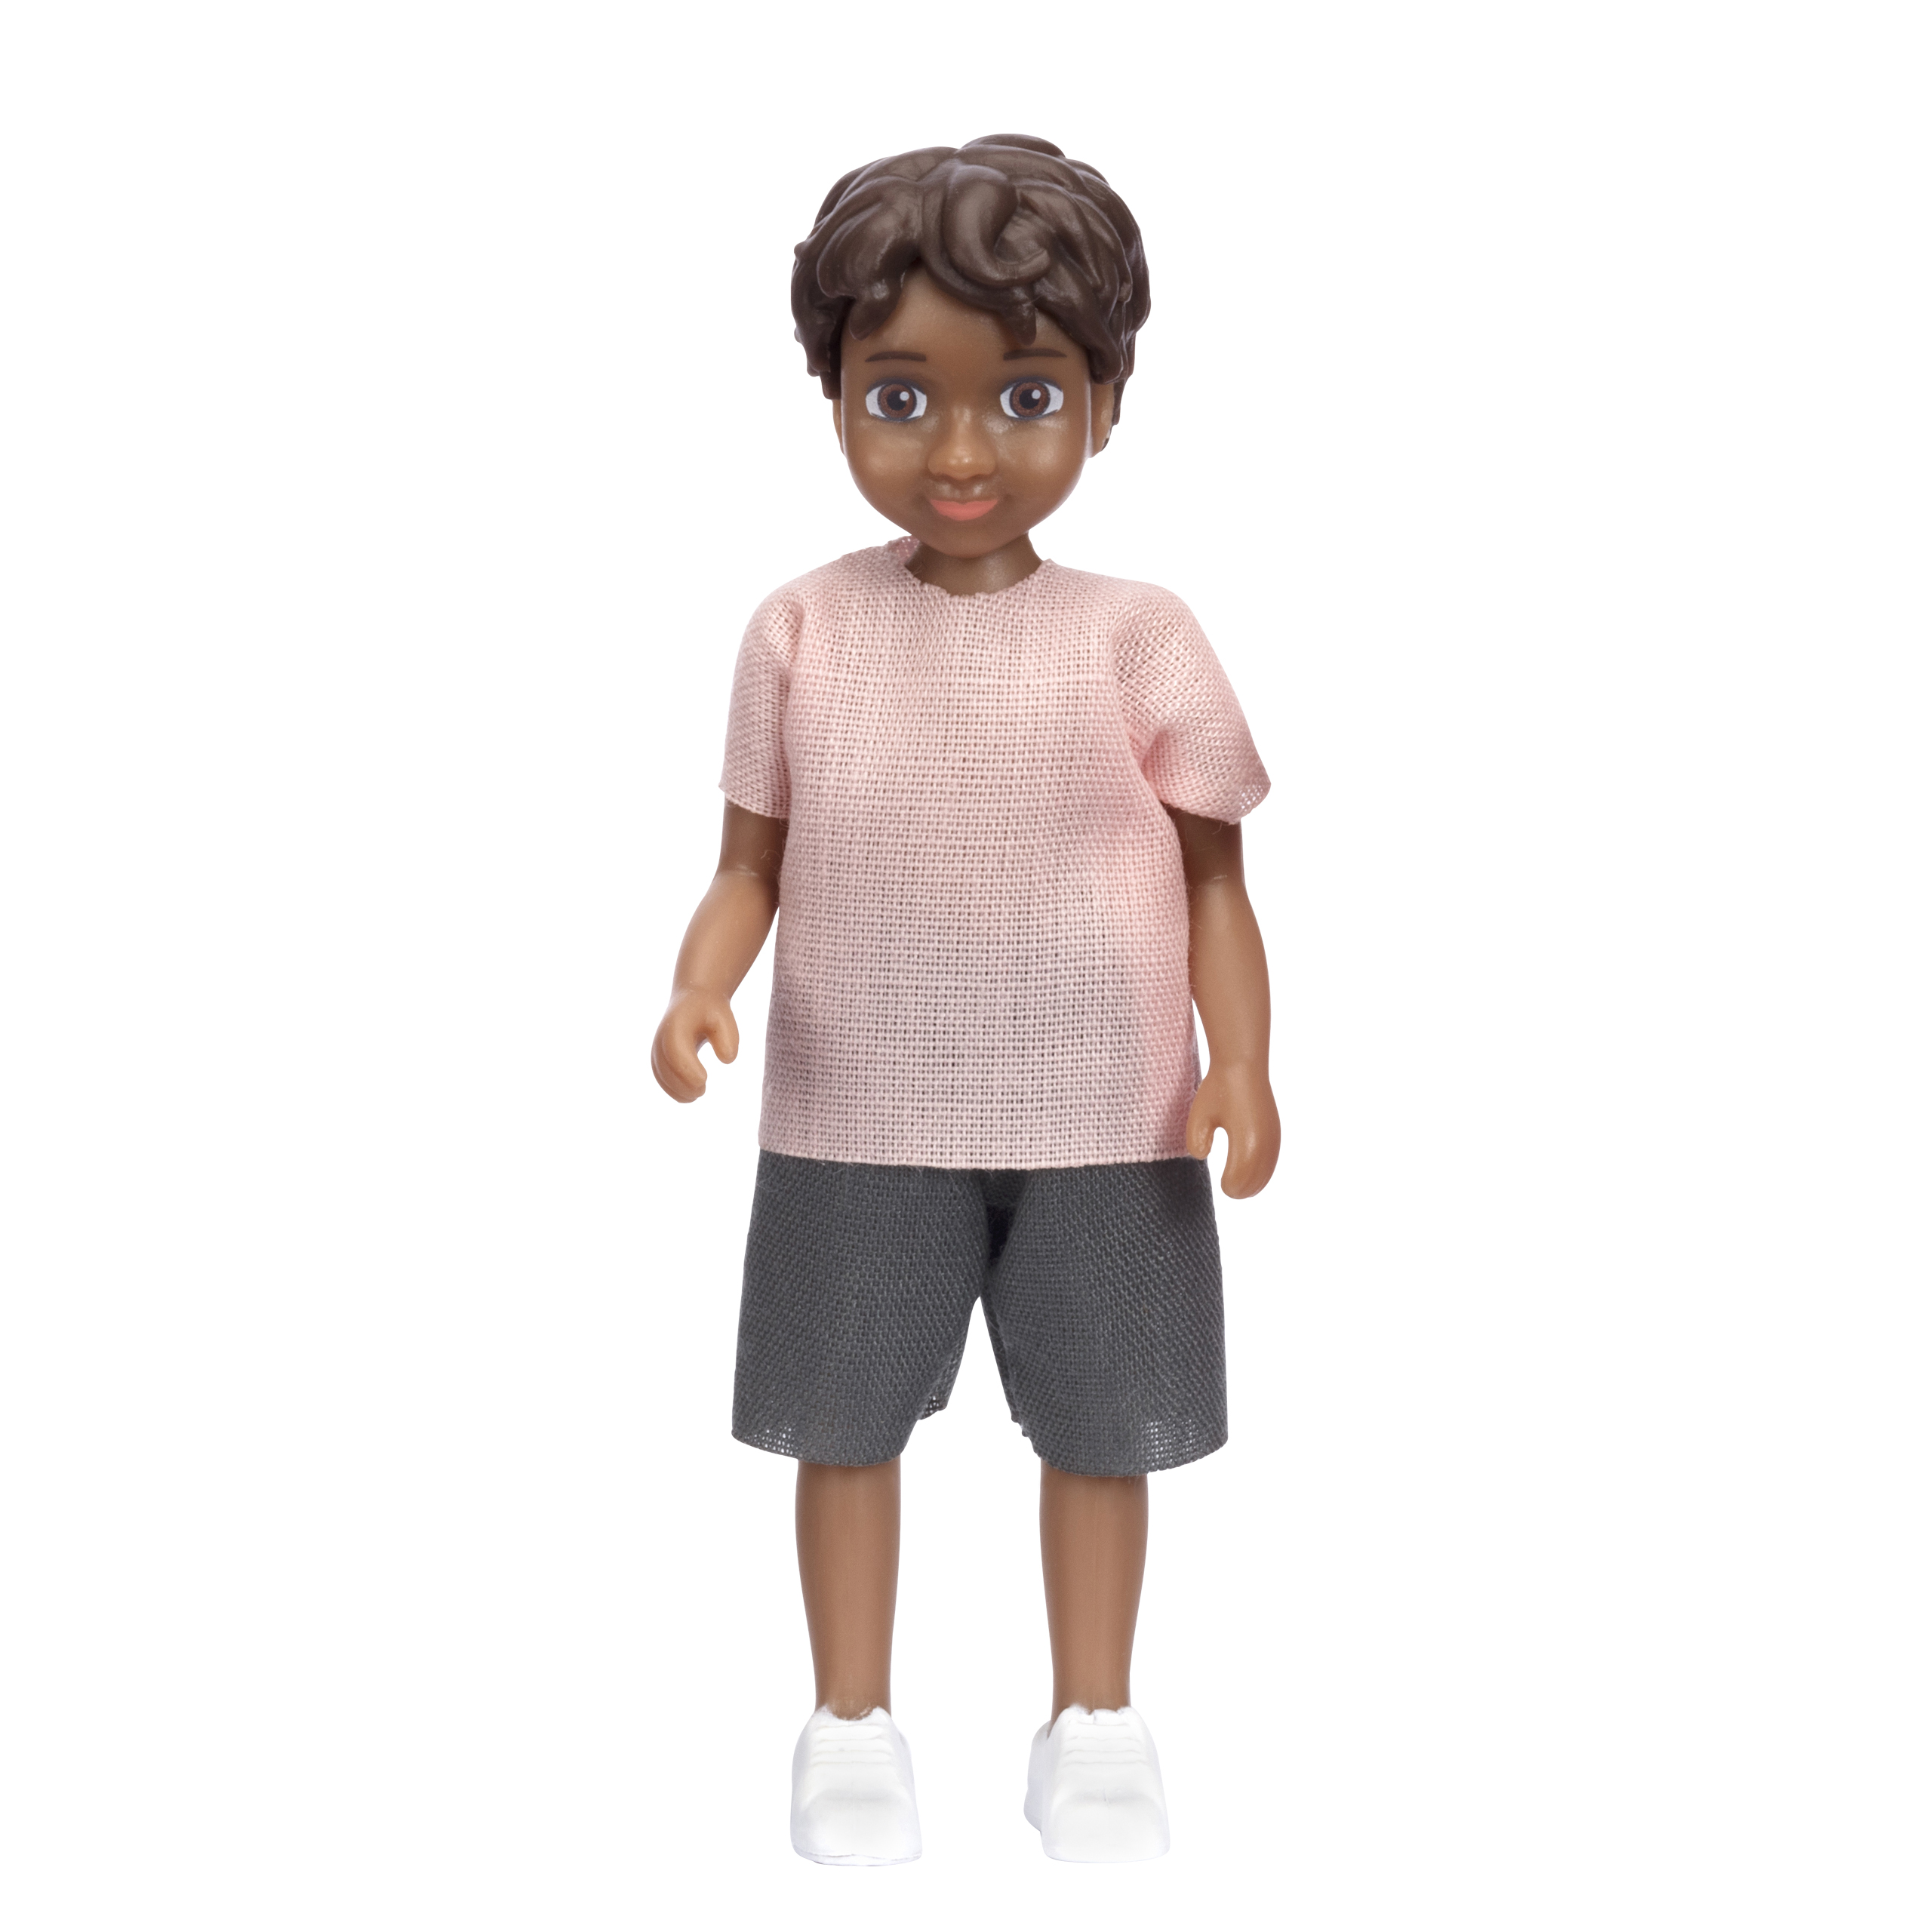 Dark-skinned dolls lundby dollhouse doll nikki boy